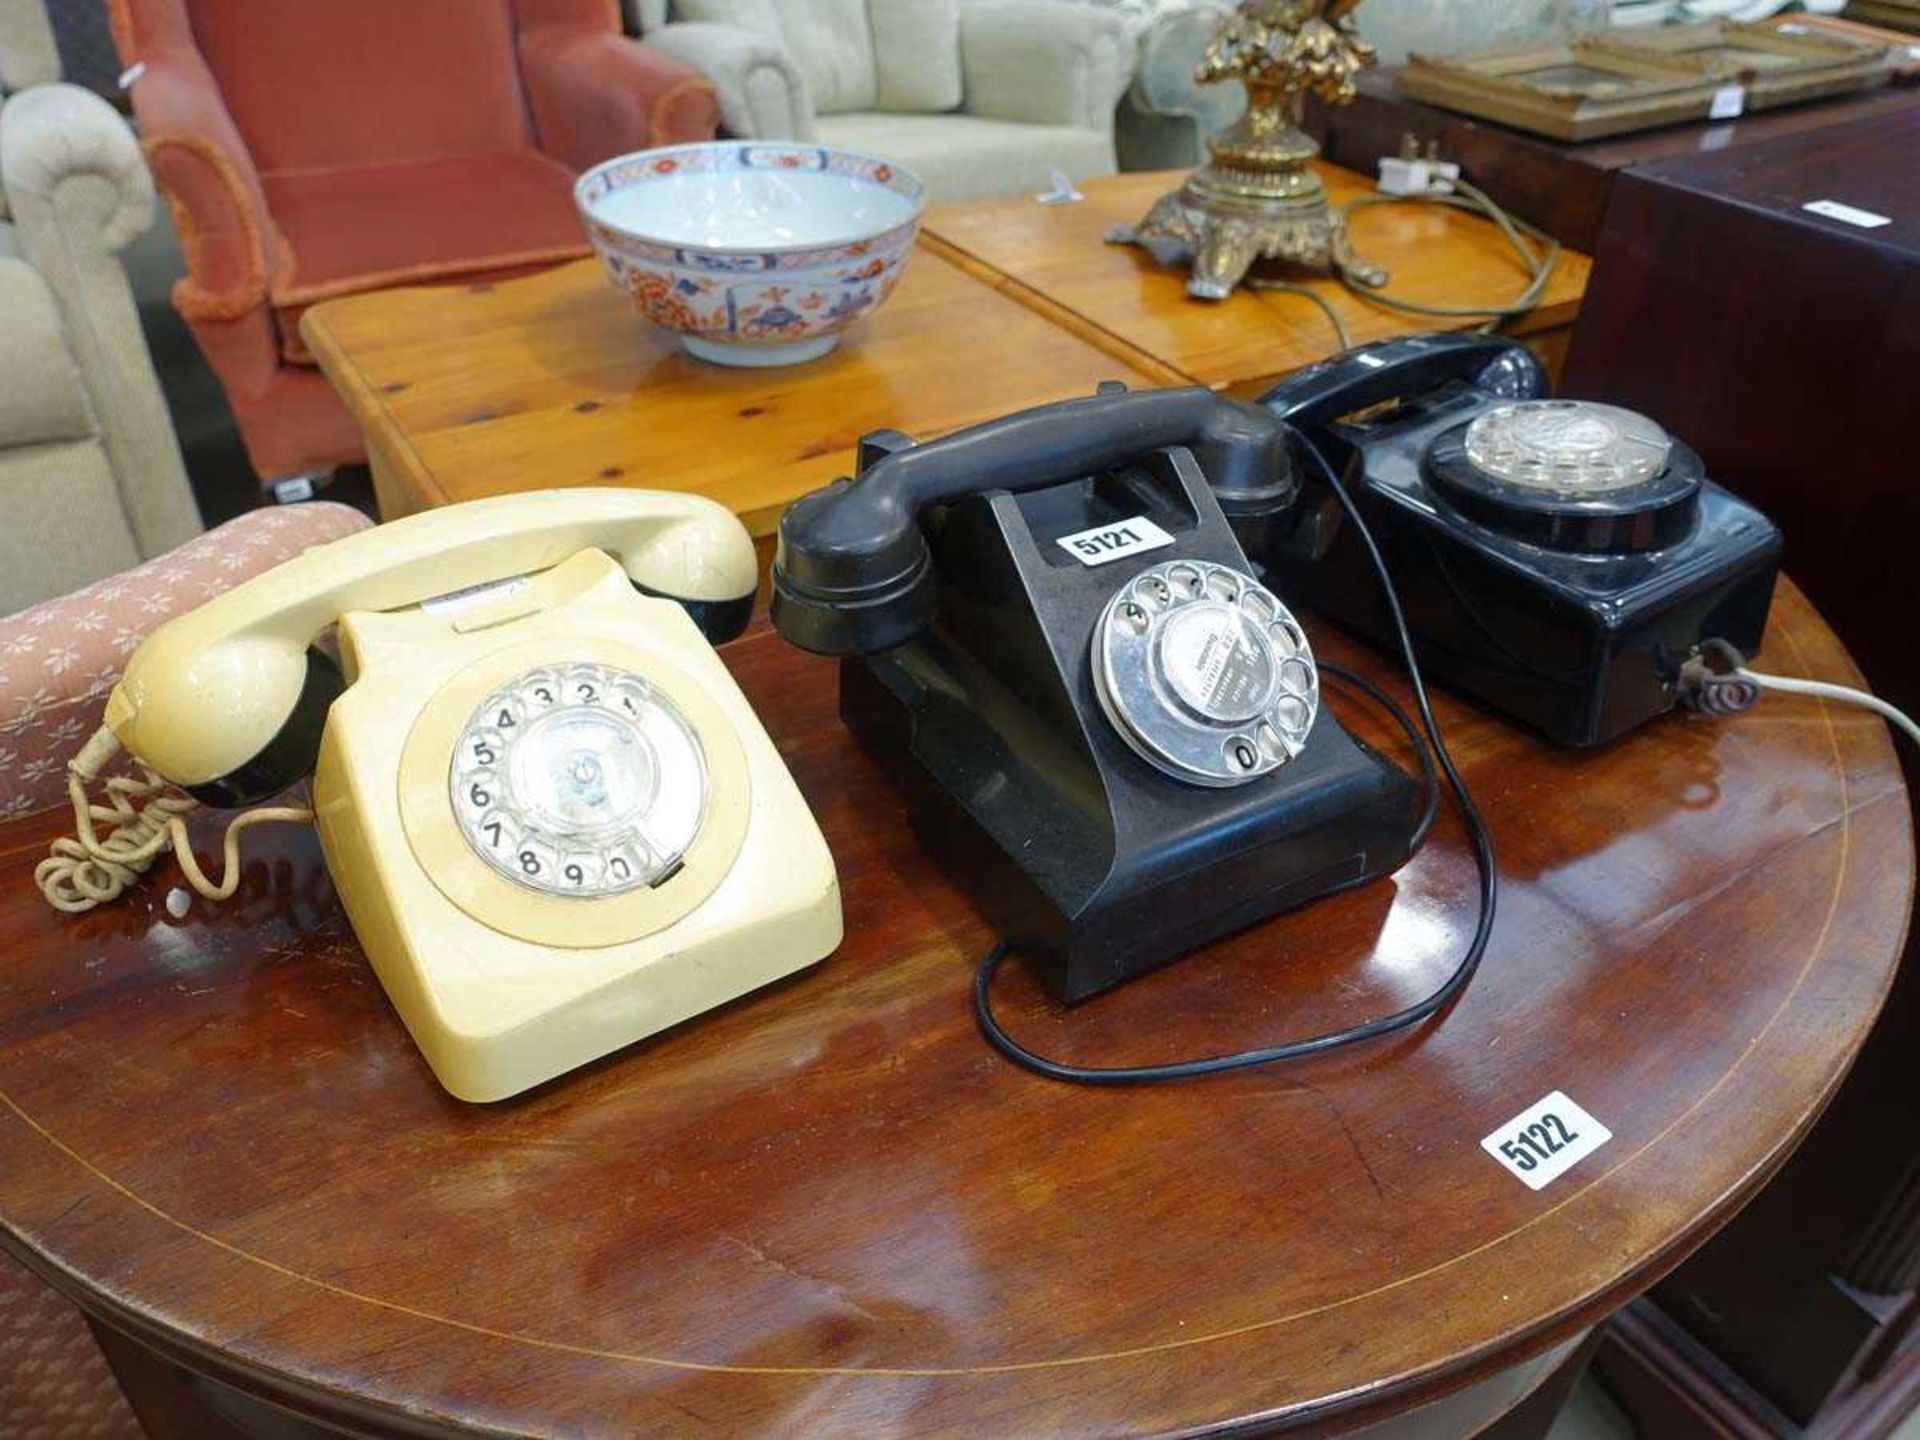 3 bakelite style telephones